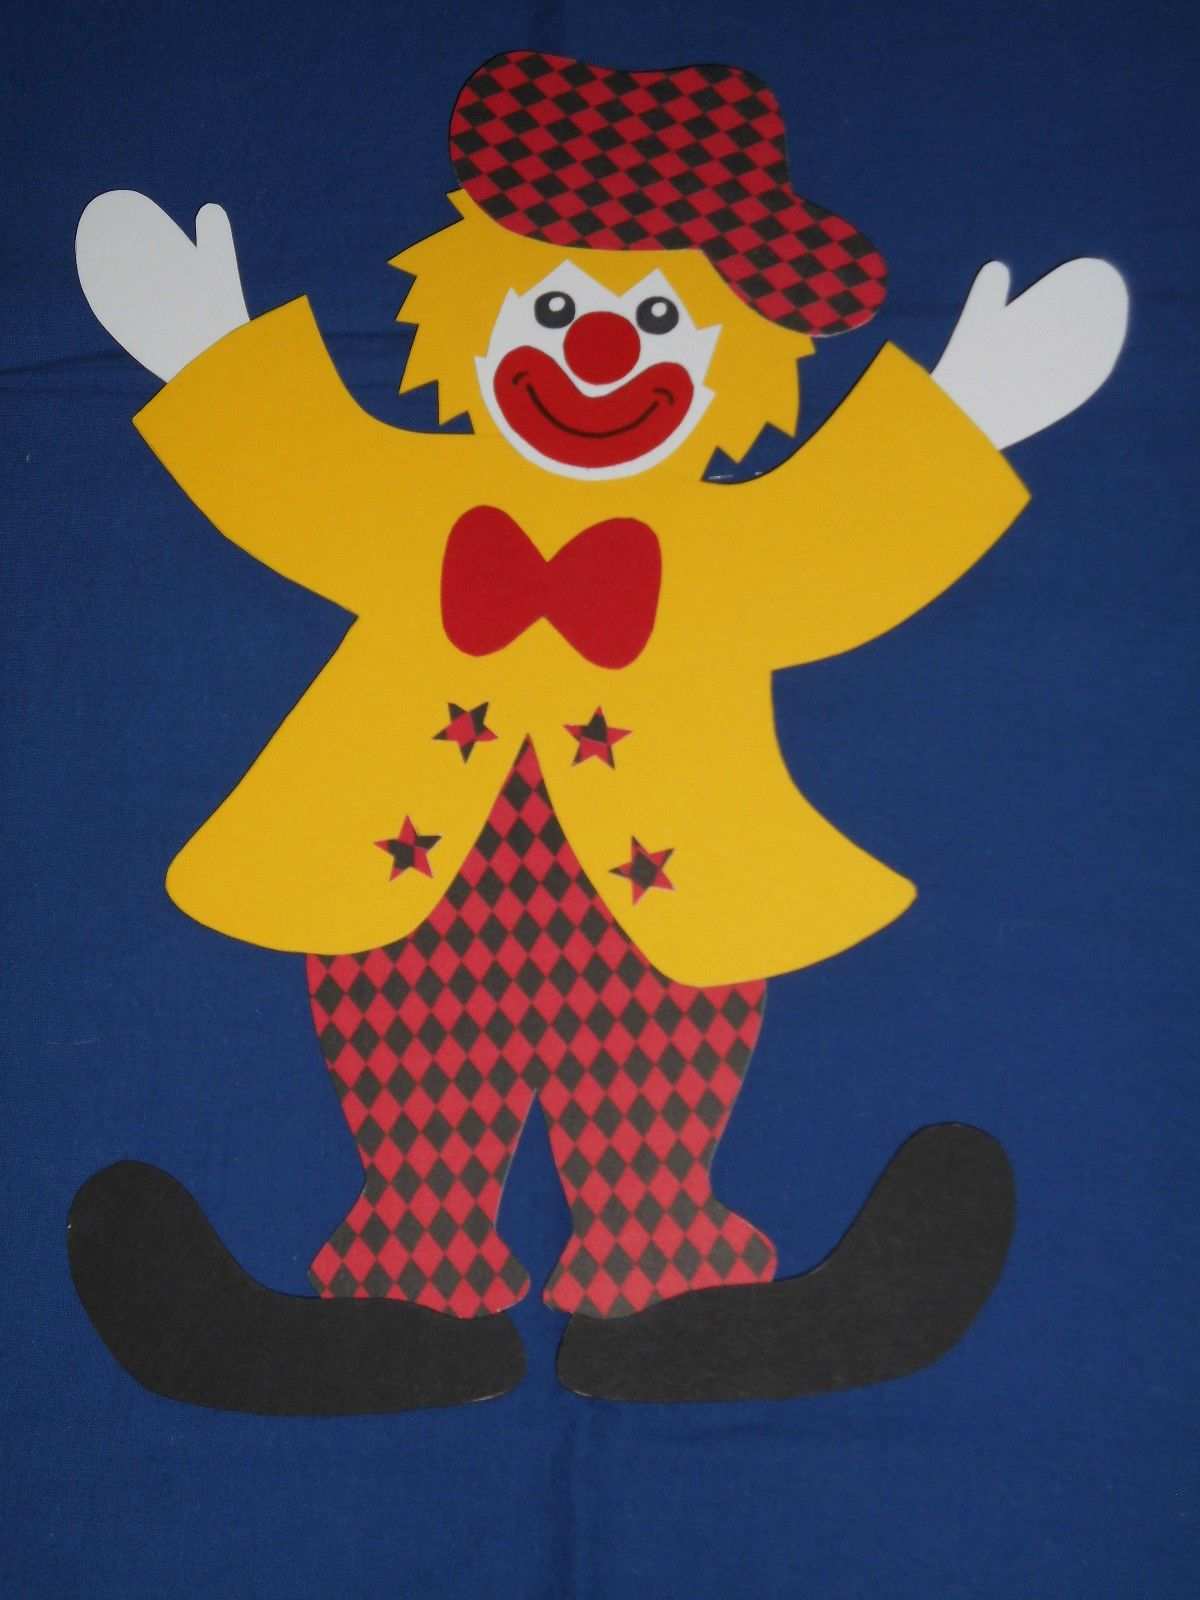 Fensterbild Tonkarton Clown Paco Gelbe Jacke Raute Karneval Fasching Deko Neu Eur 4 95 Biete Hier Eine Tolle F Bastelarbeiten Fasching Basteln Karneval Deko